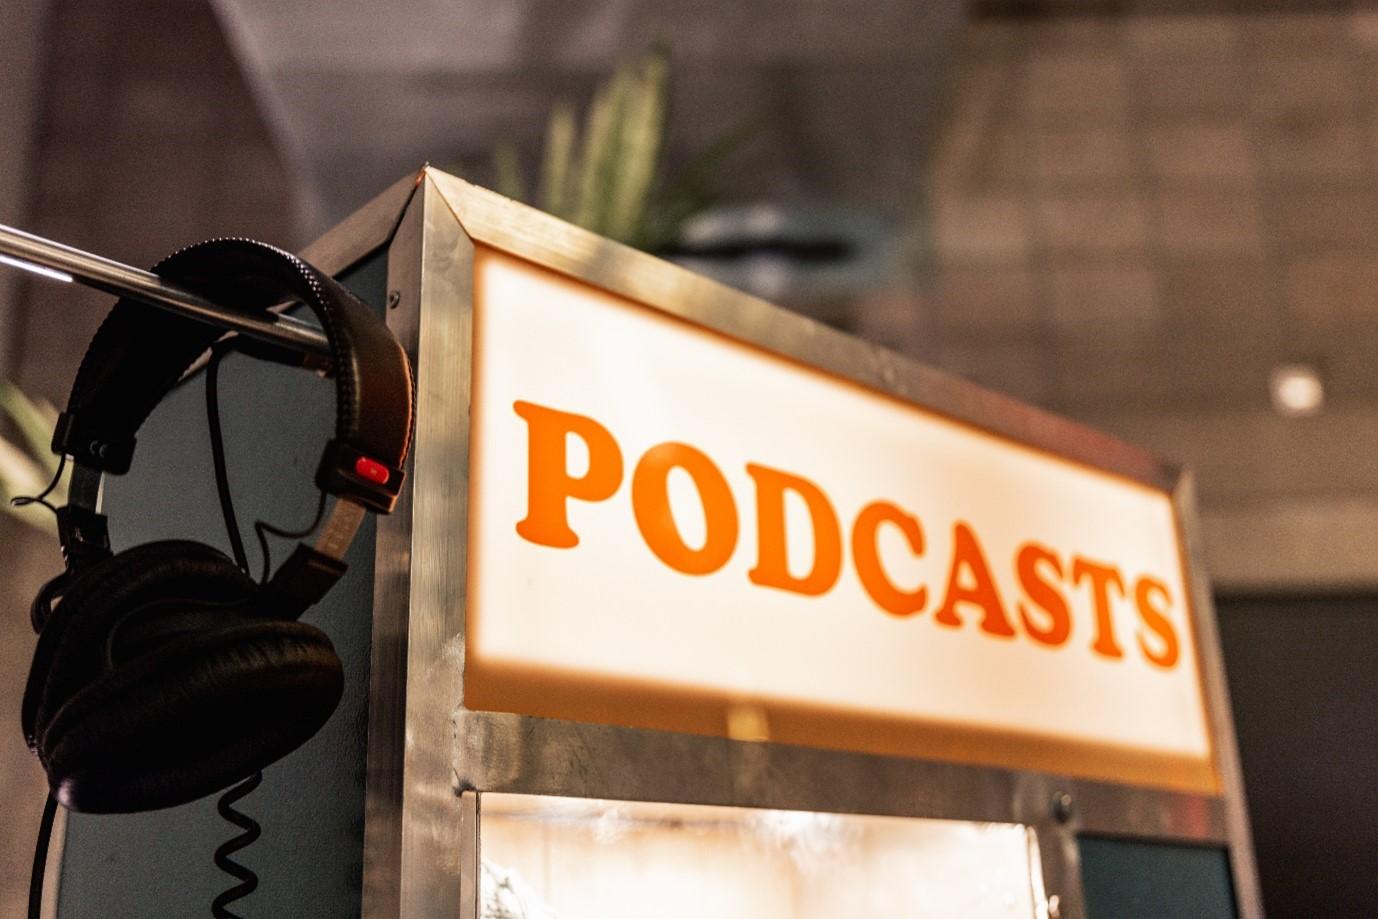 Podcastinstallatie met hoofdtelefoon